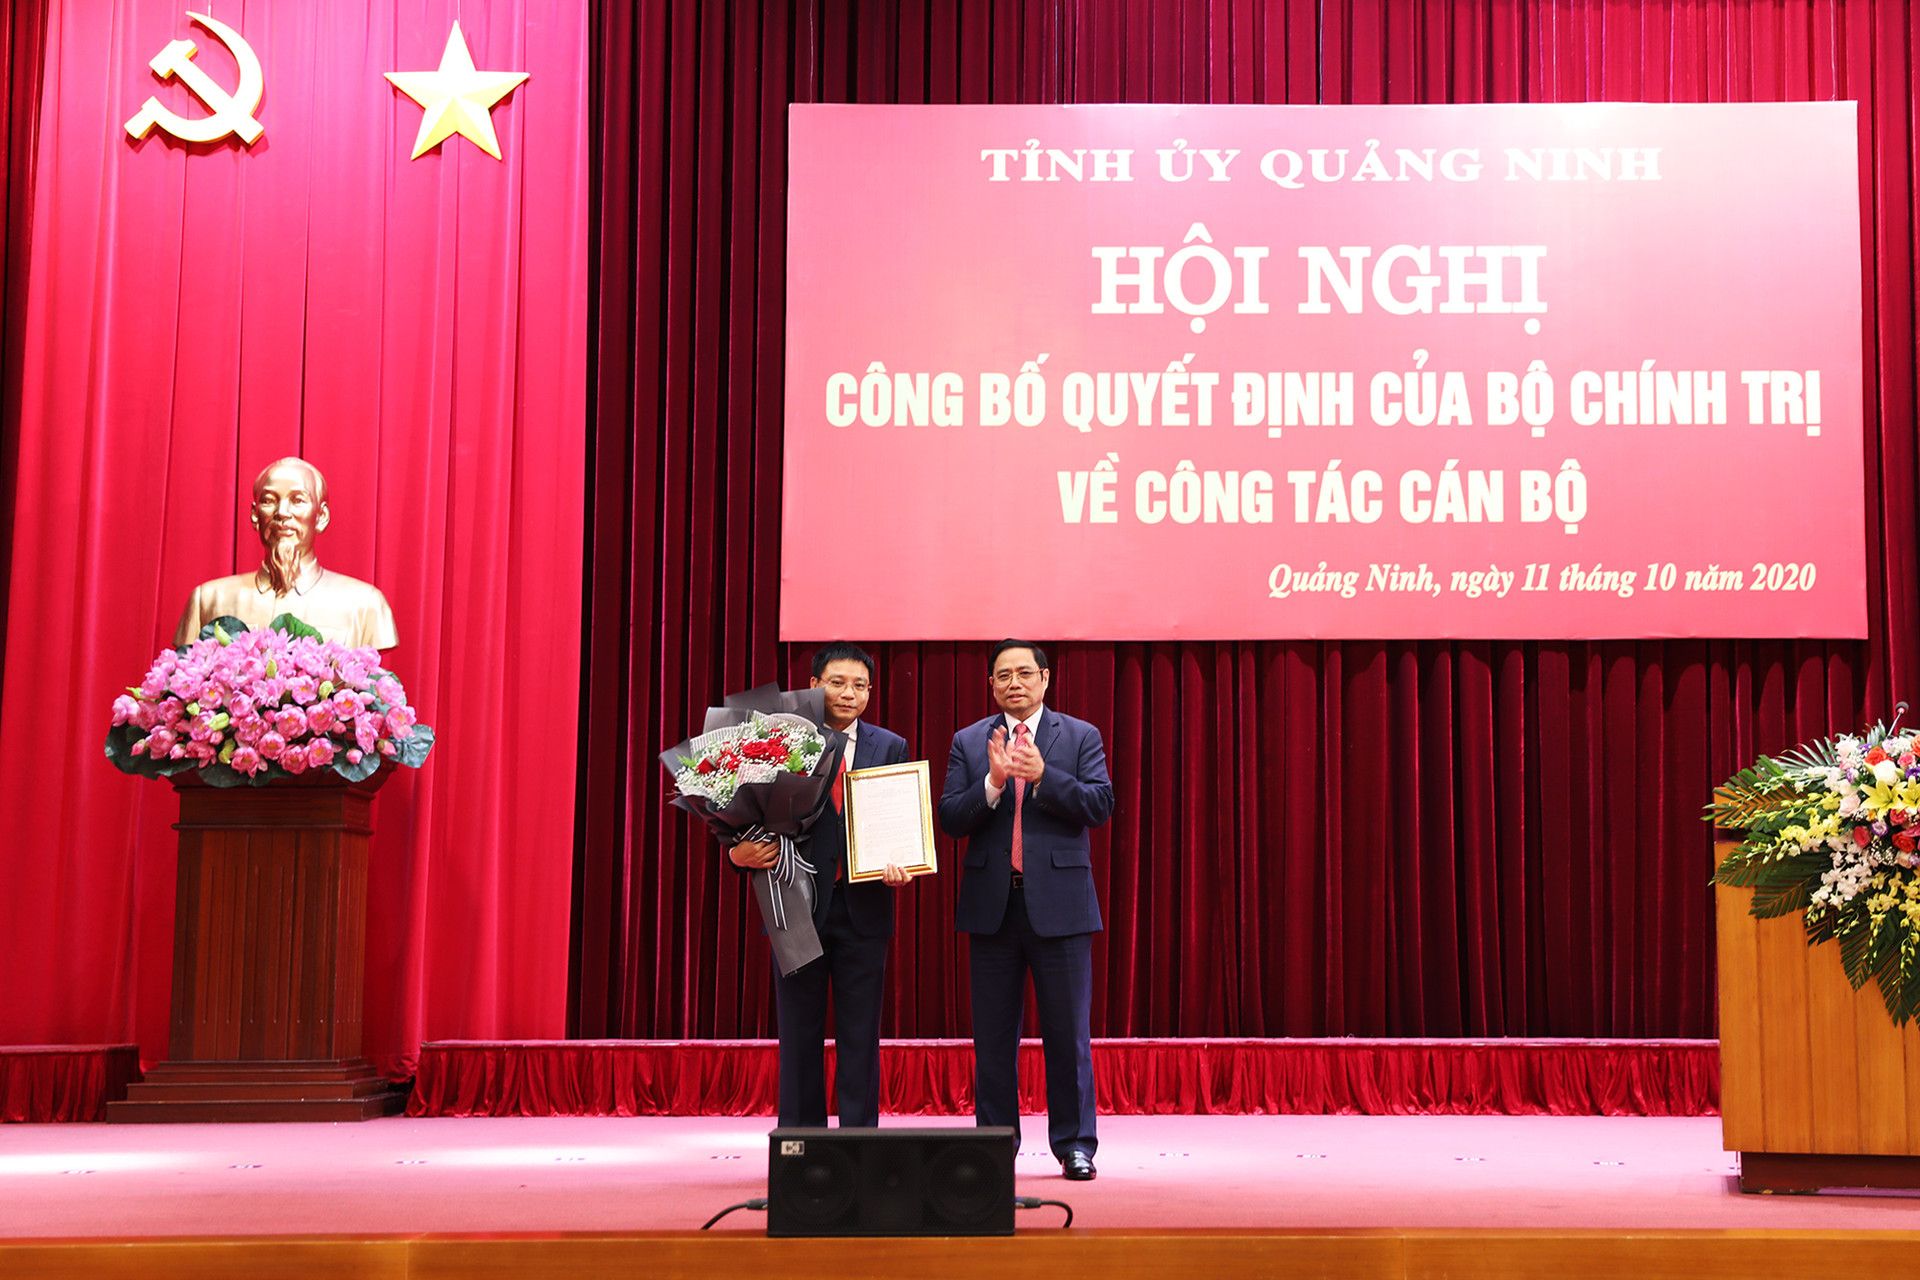 Đồng chí Phạm Minh Chính, Ủy viên Bộ Chính trị, Bí thư Trung ương Đảng, Trưởng Ban Tổ chức Trung ương, trao Quyết định của Bộ Chính trị cho đồng chí Nguyễn Văn Thắng.